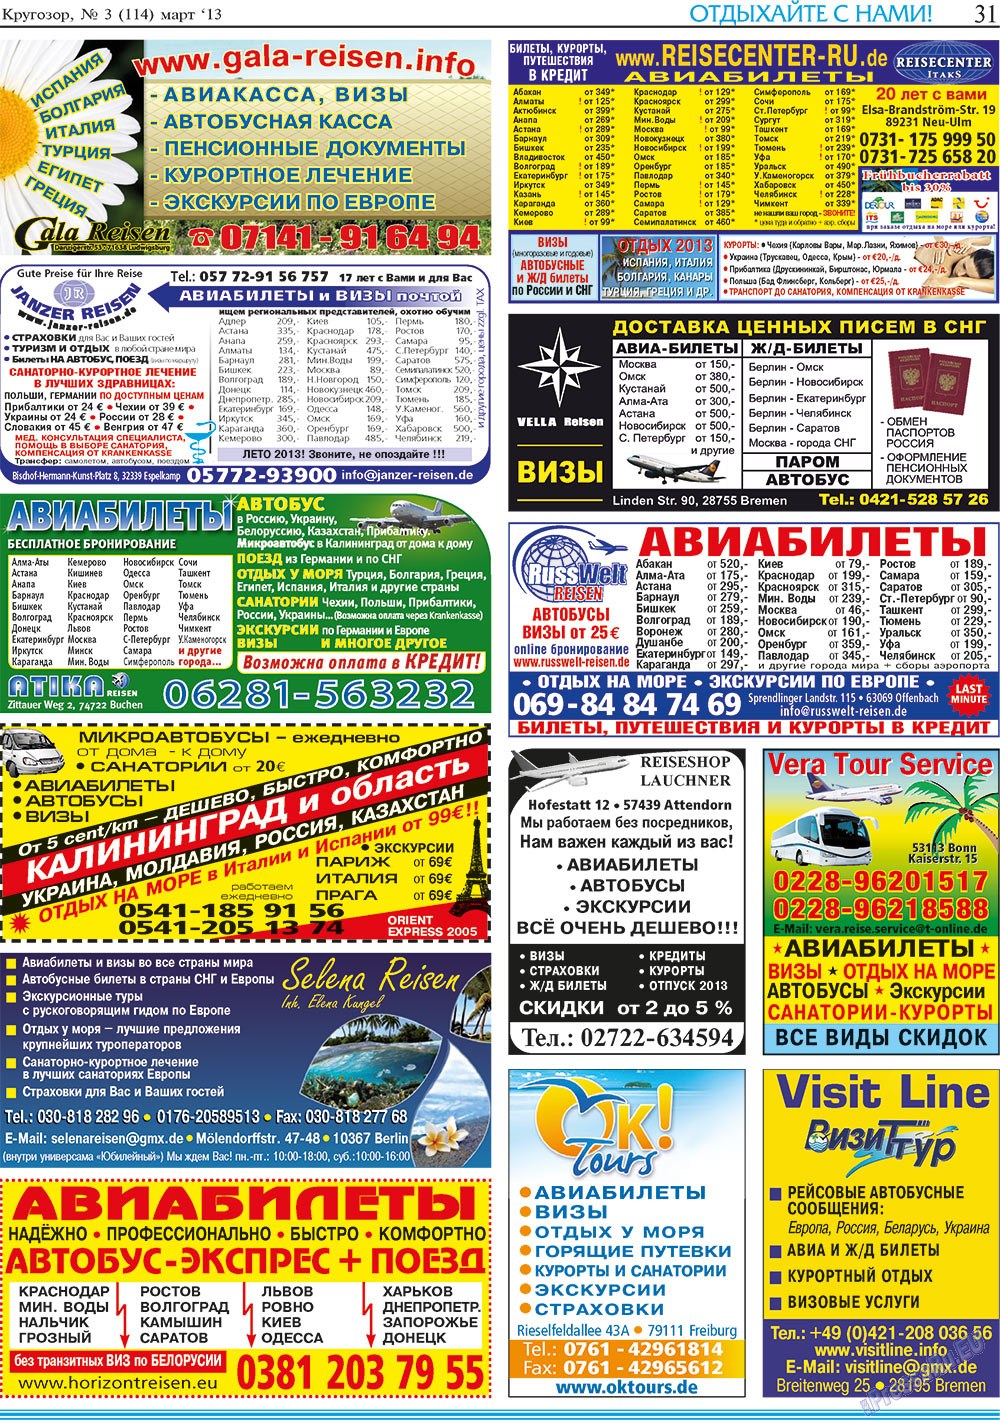 Кругозор, газета. 2013 №3 стр.31